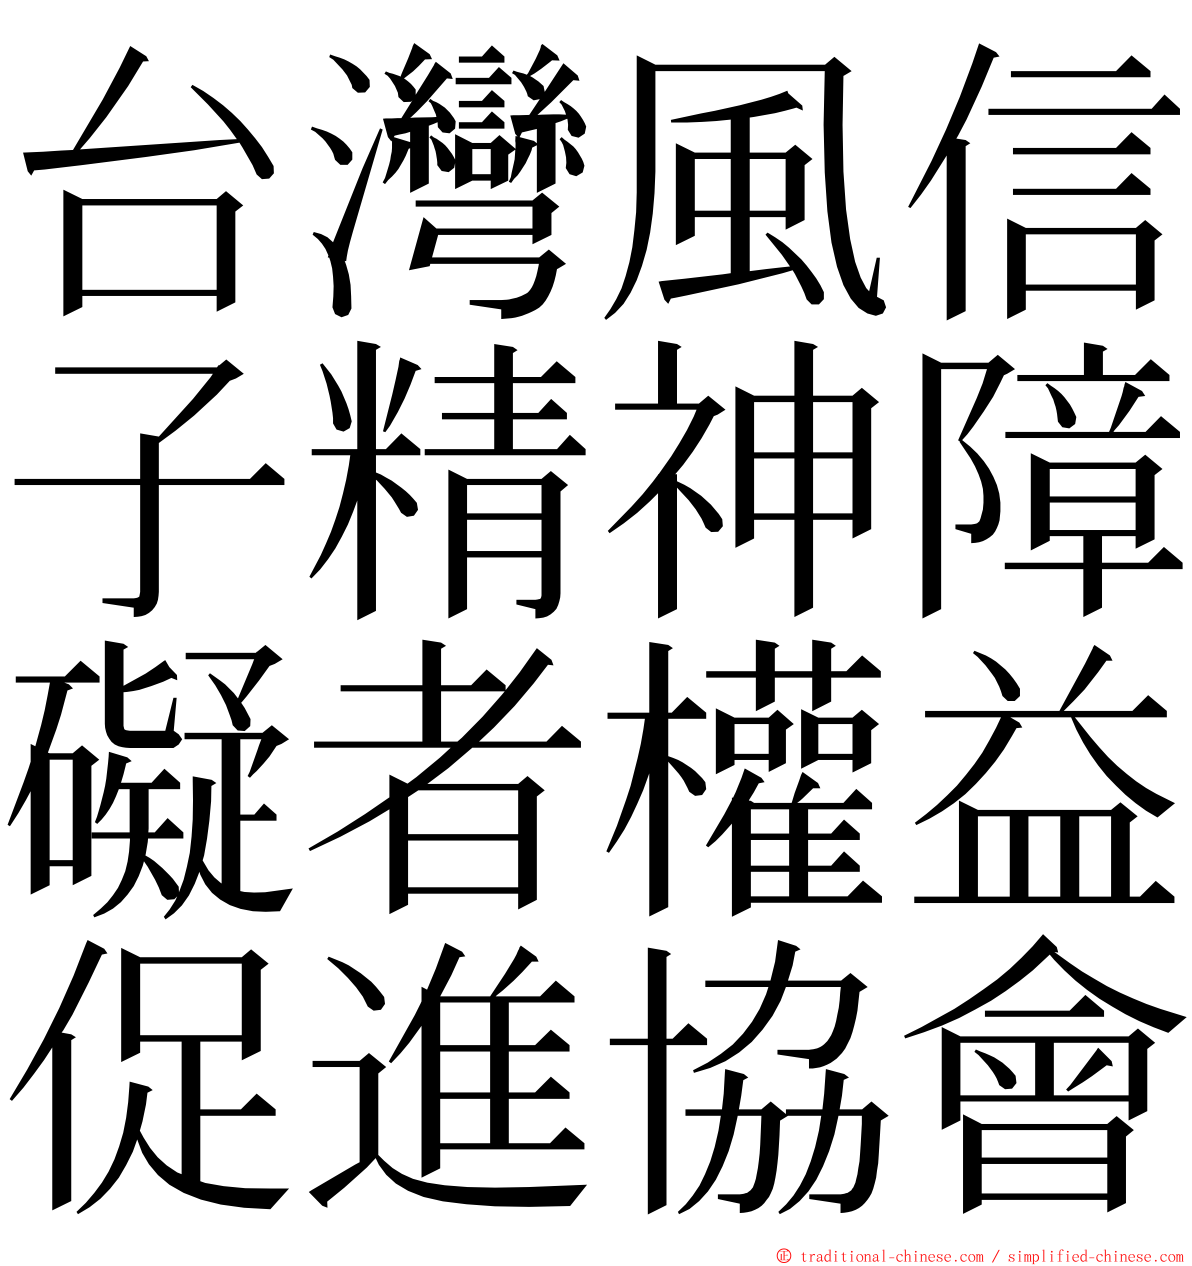 台灣風信子精神障礙者權益促進協會 ming font